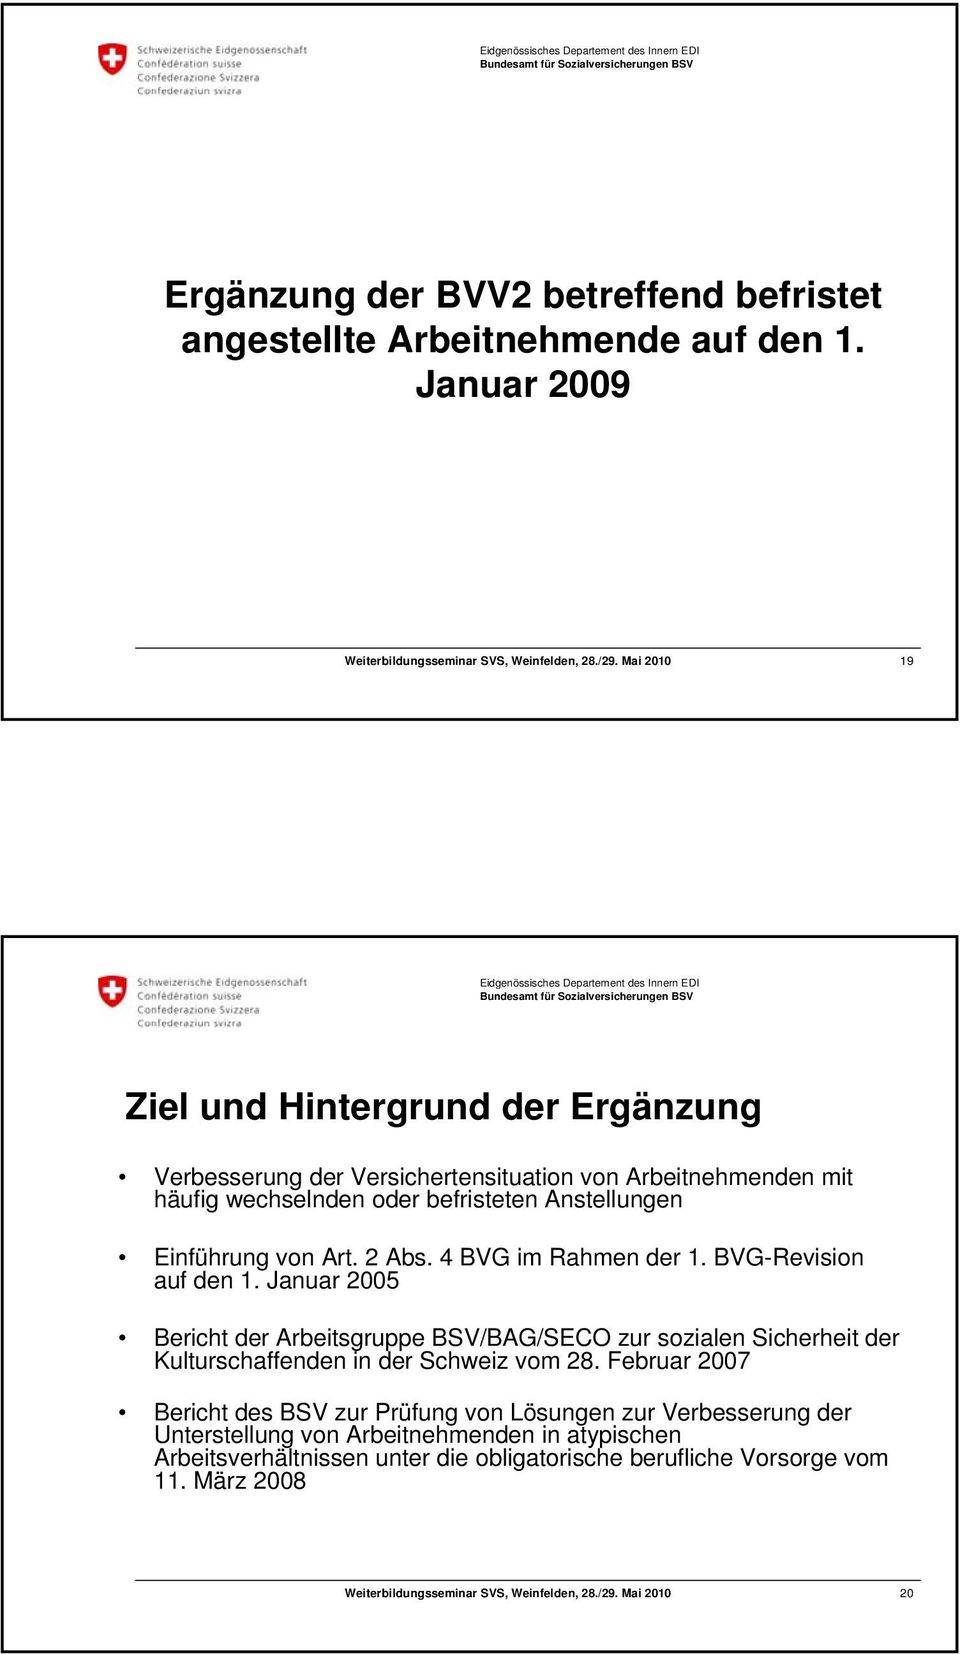 Anstellungen Einführung von Art. 2 Abs. 4 BVG im Rahmen der 1. BVG-Revision auf den 1.